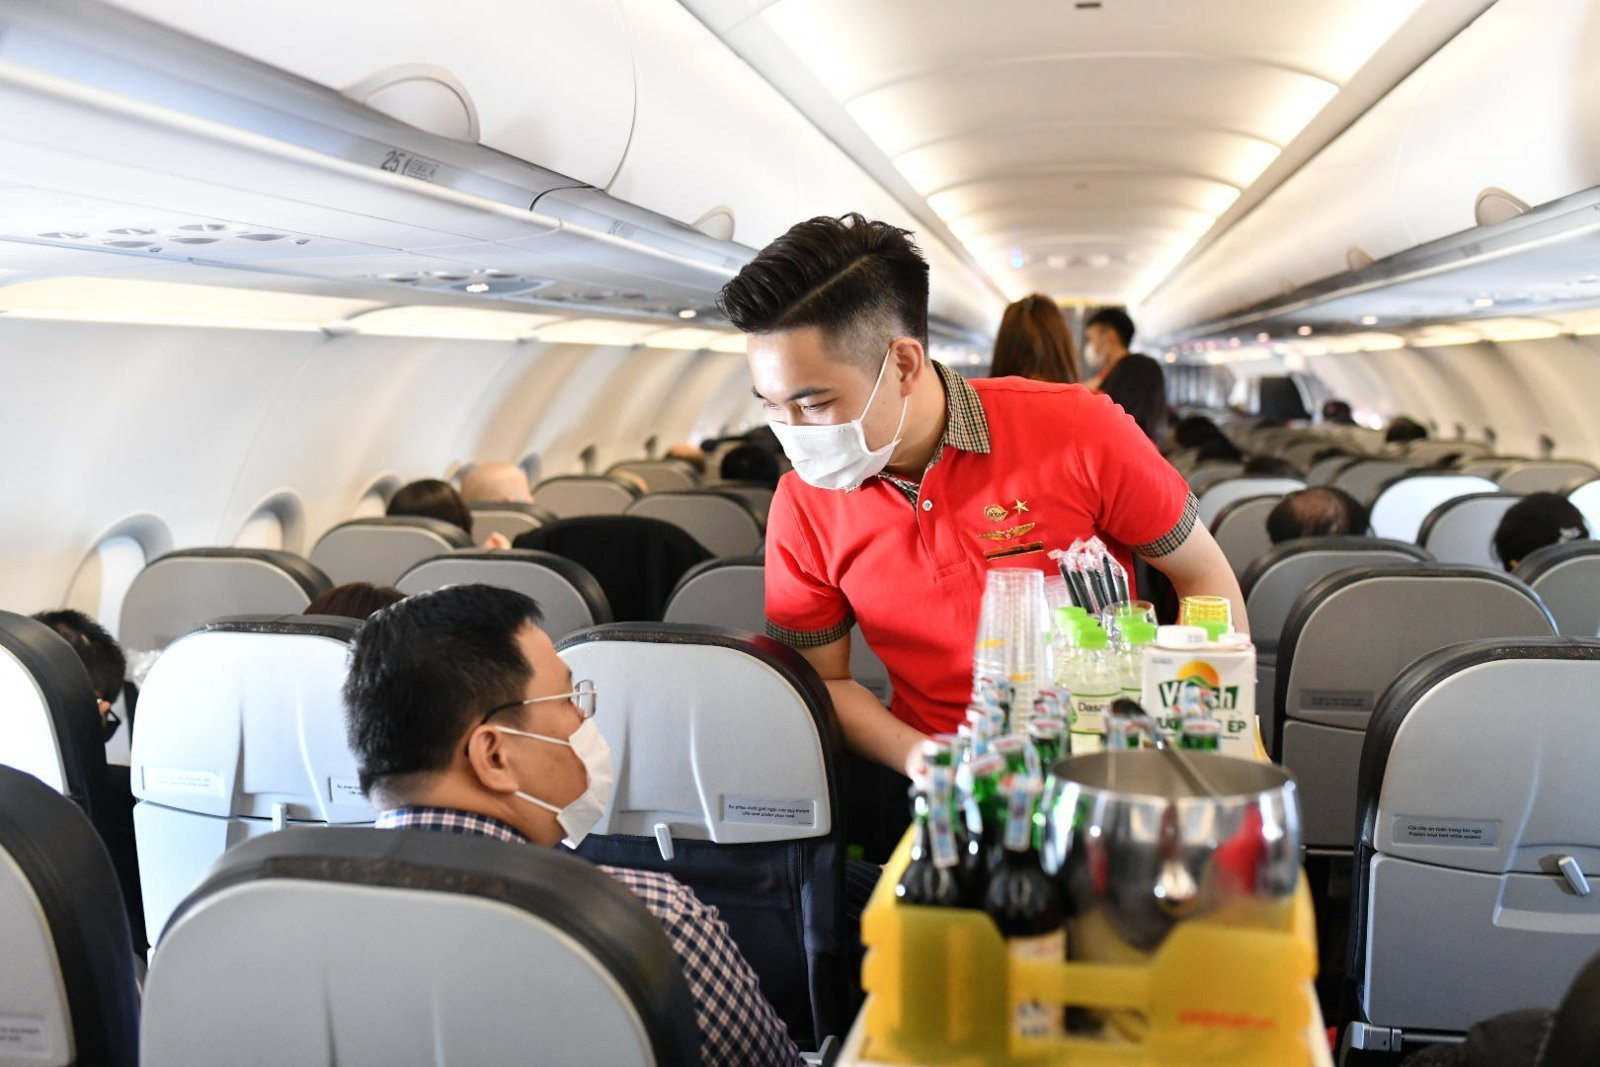 Hãng hàng không của Việt Nam là Vietjet giành được hai giải thưởng hãng hàng không giá rẻ tốt nhất và hãng hàng không giá rẻ tốt nhất về dịch vụ hiếu khách trên máy bay (ghi nhận giá trị của dịch vụ trên máy bay). Ảnh: Vietjet Air